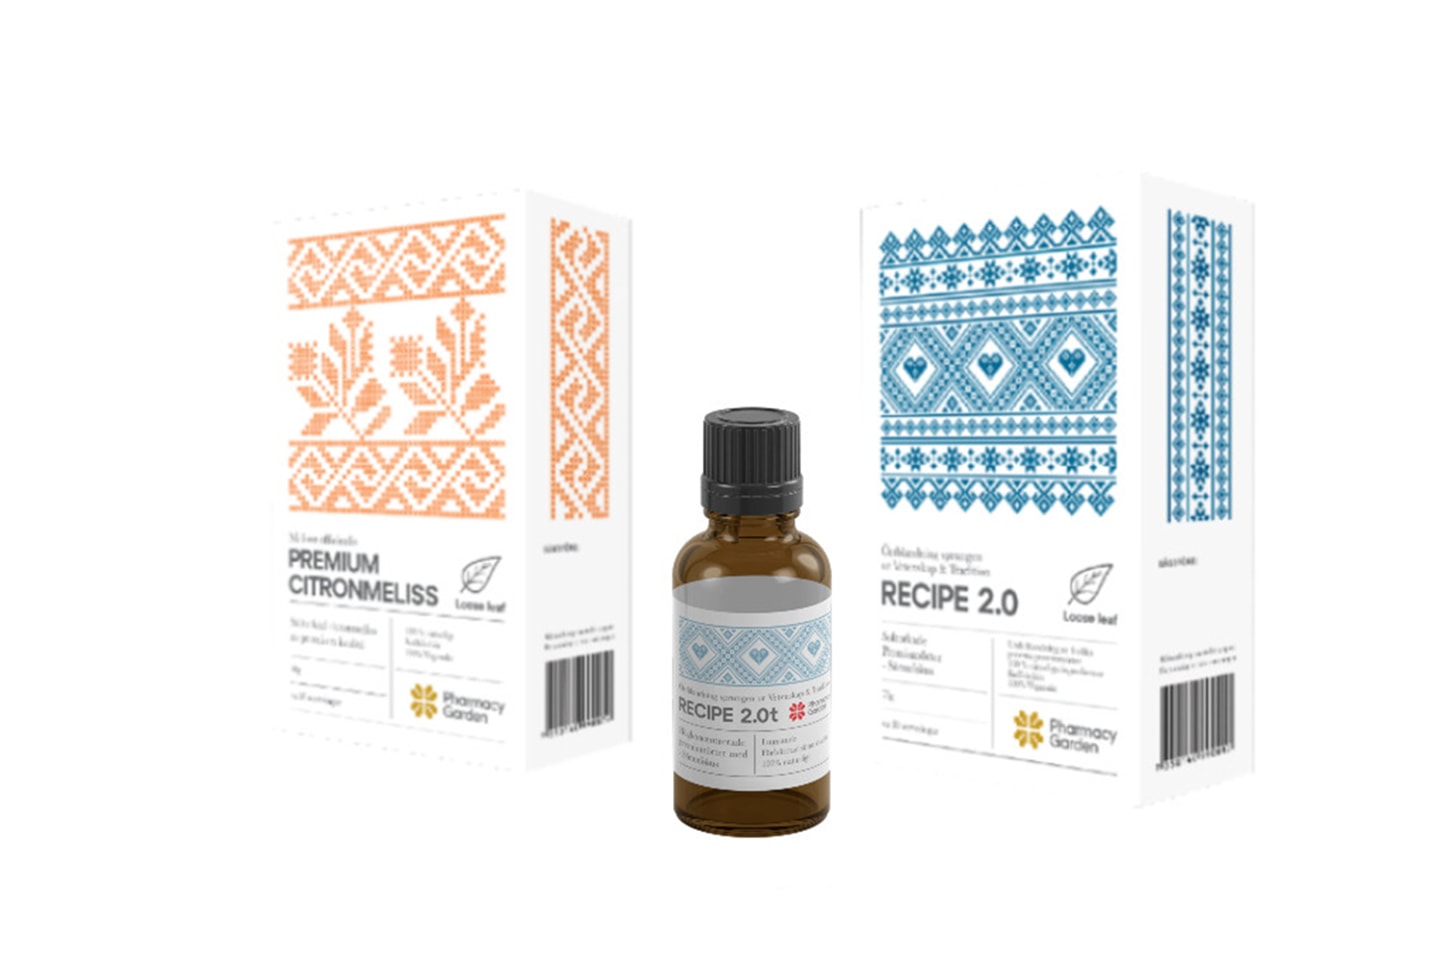 Tebryggare + Recipe 1.0 eller Lugn & Ro paketet från Pharmacy Garden (1 av 7)